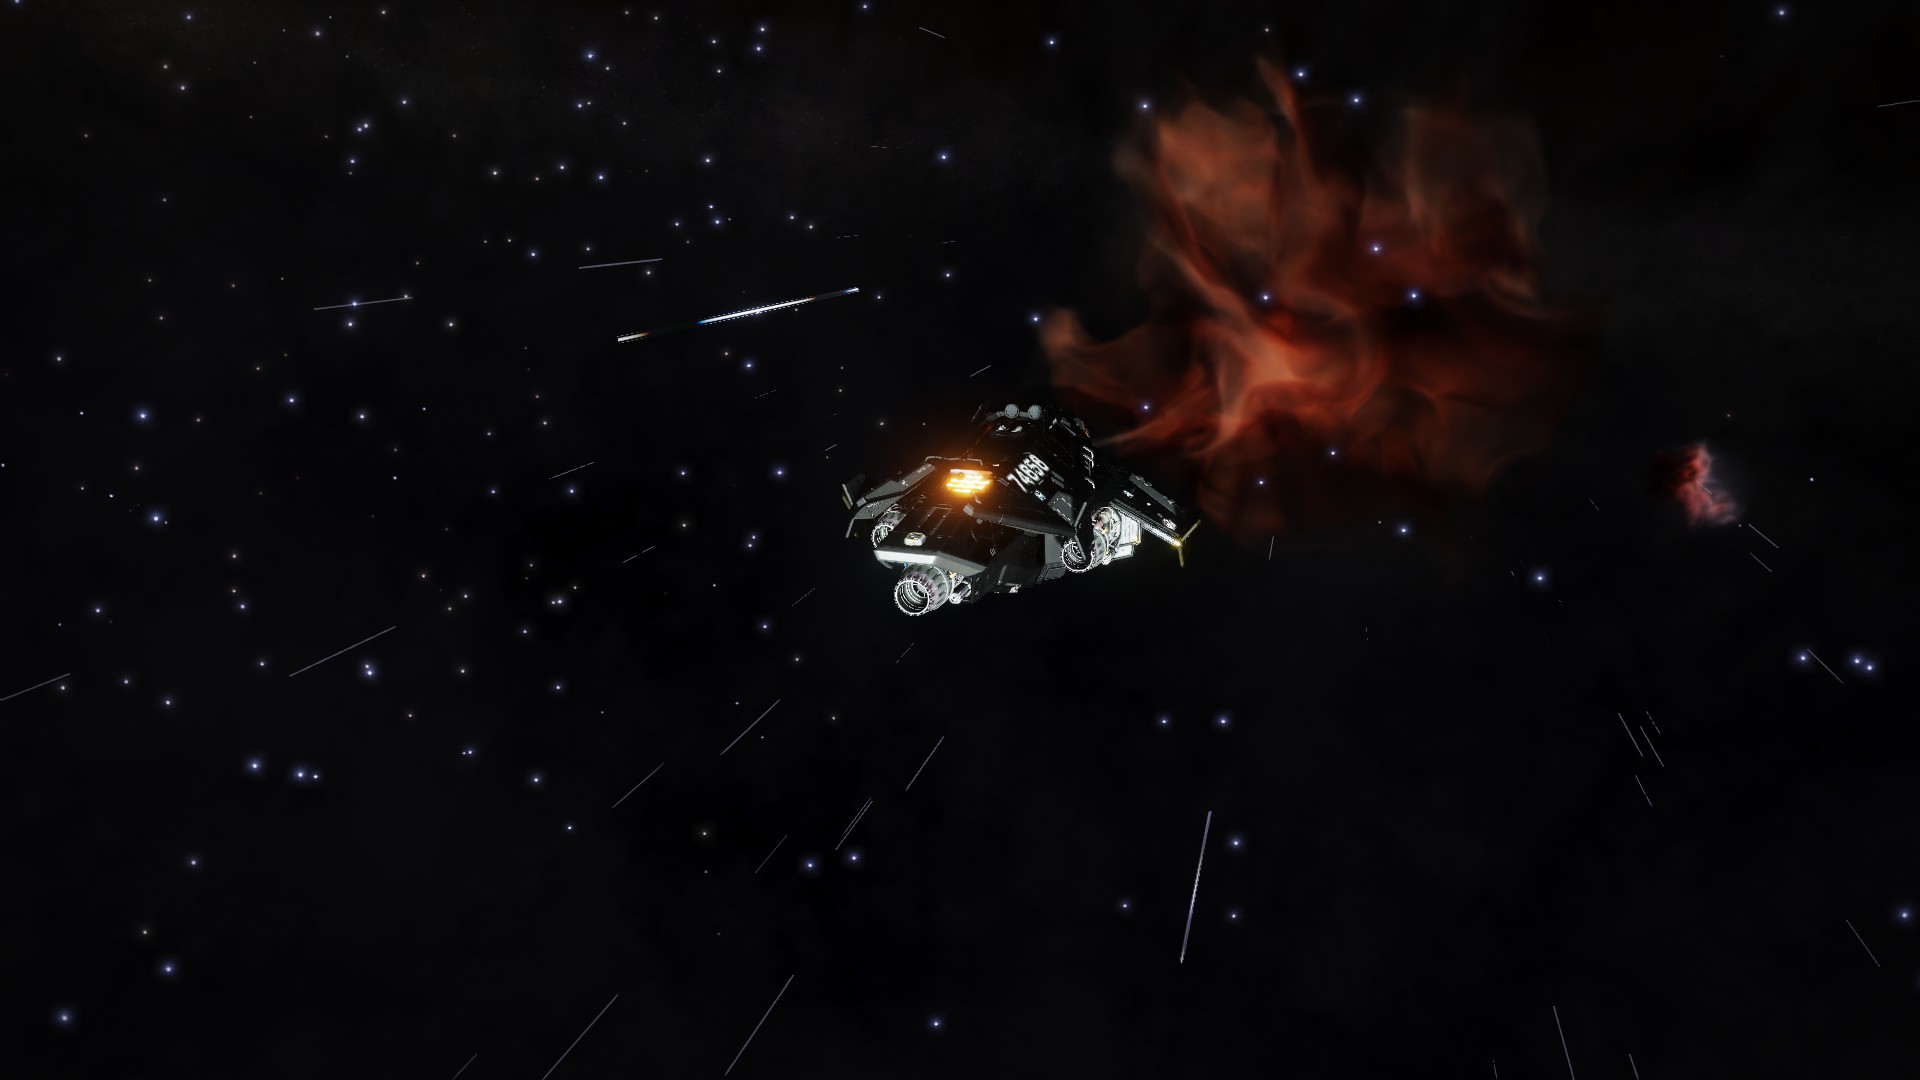 Nebula Approach